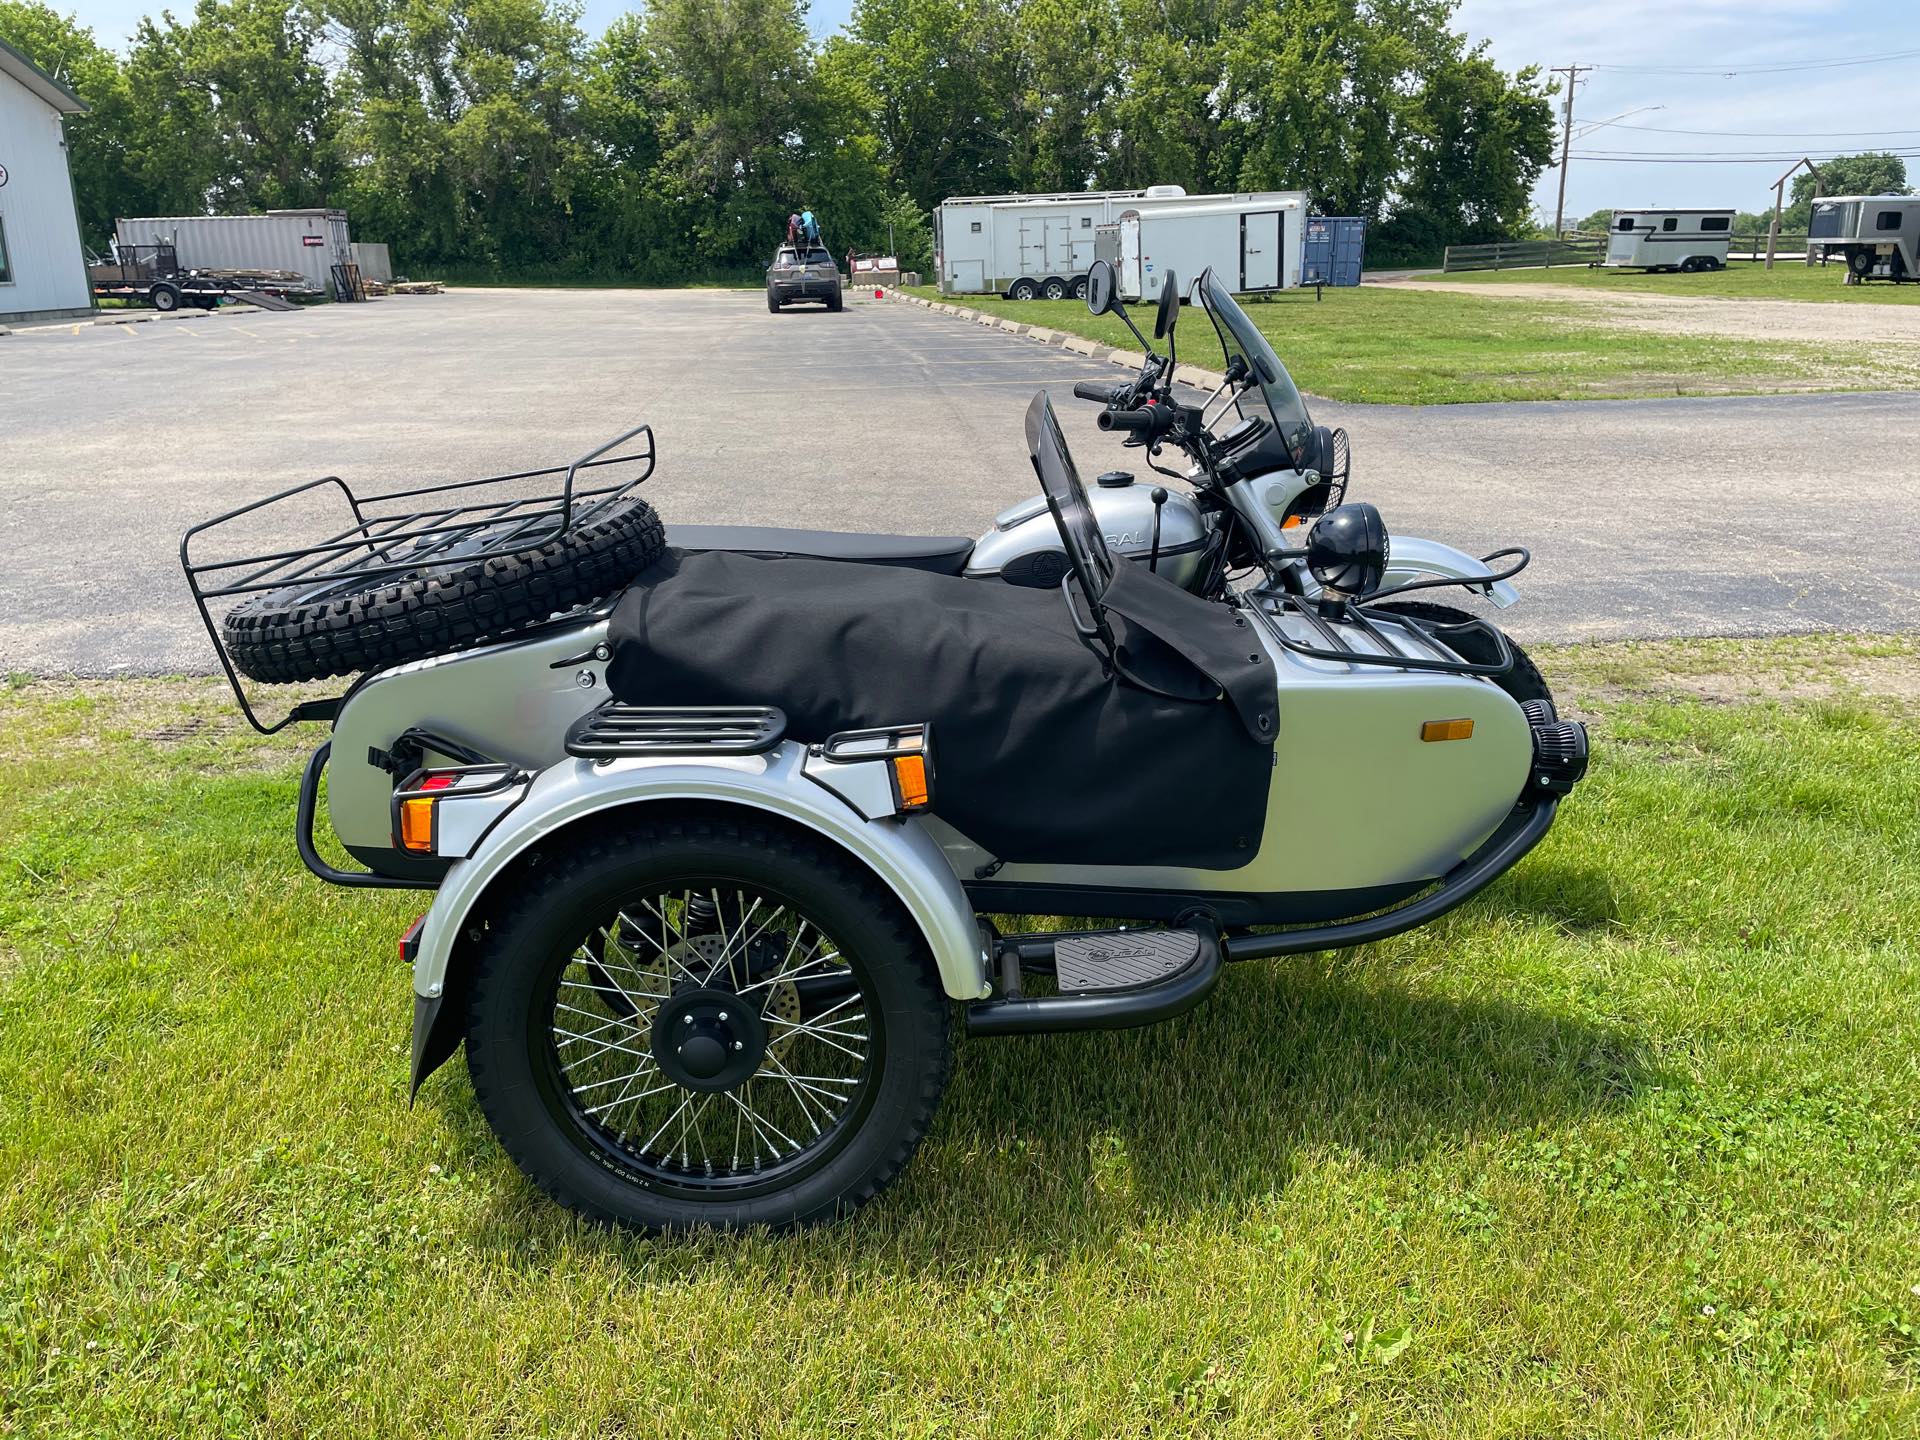 2019 Ural Gear-Up 750 at Randy's Cycle